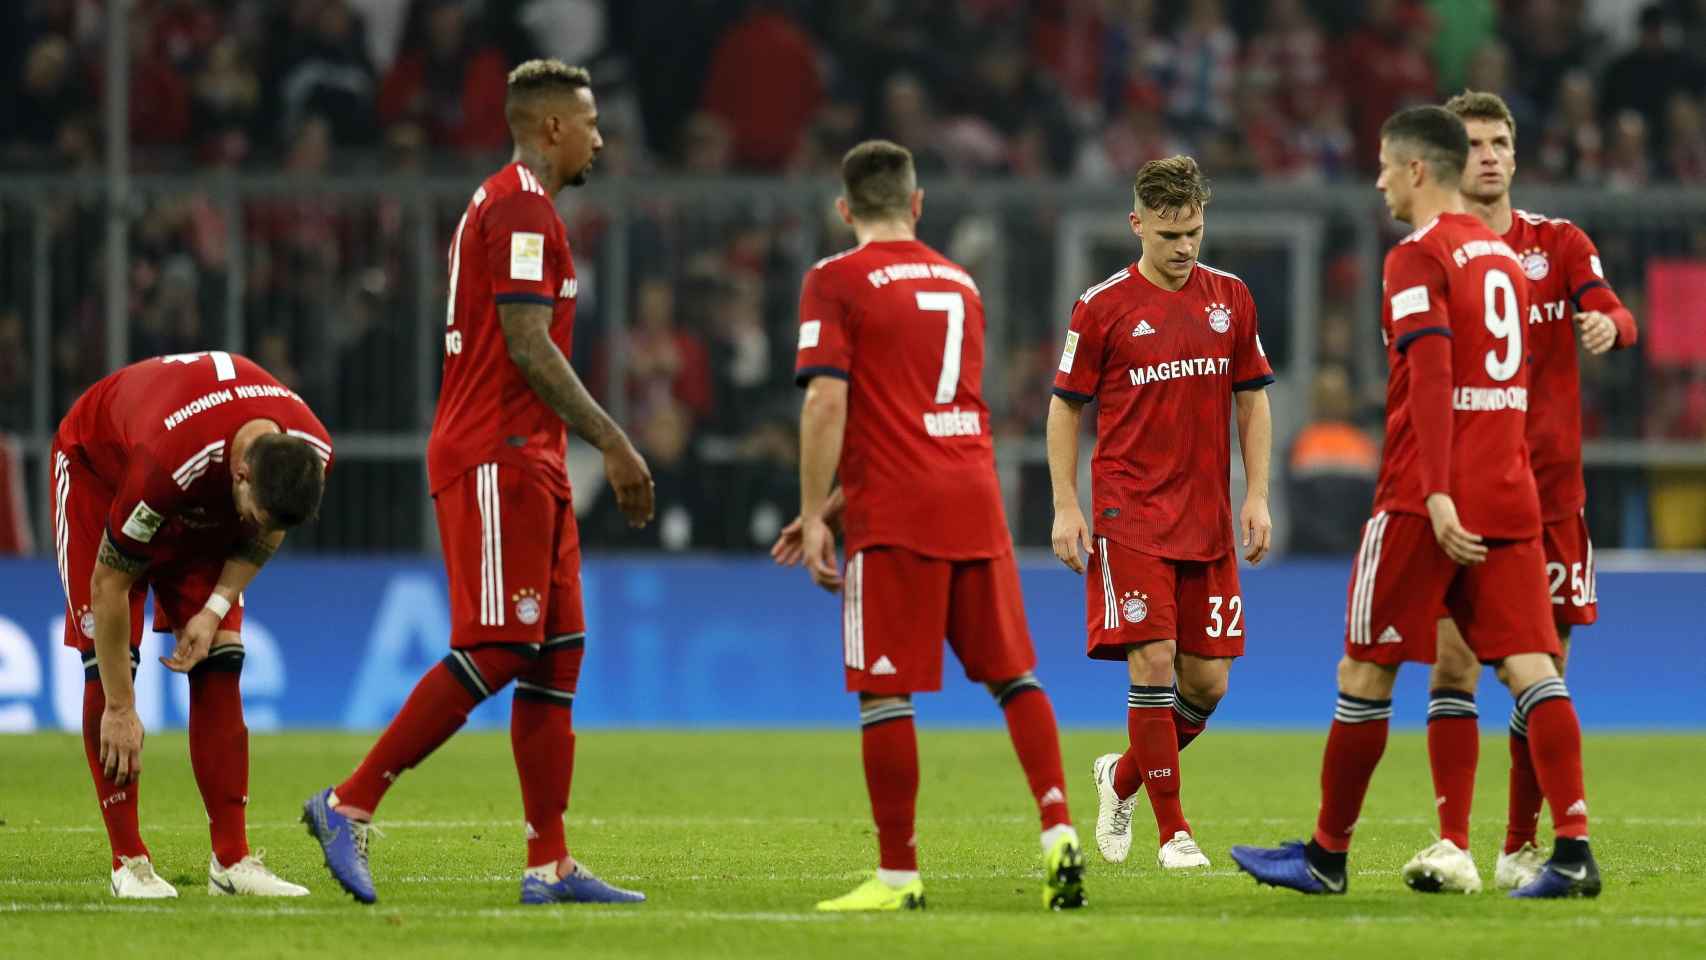 Jugadores del Bayern Múnich en un partido